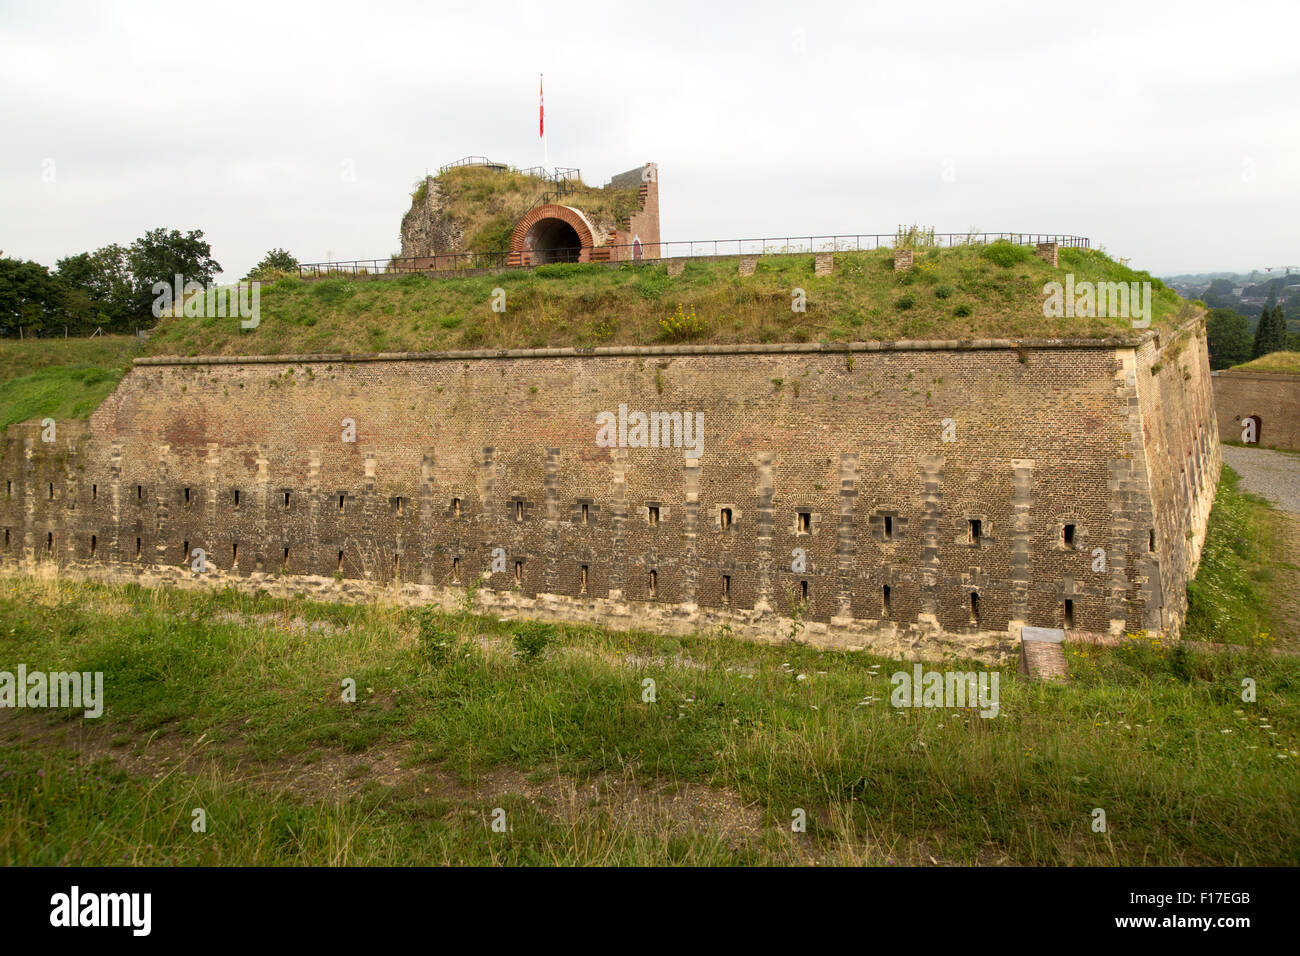 Fort Sint Pieter, Saint Peter Fort, Maastricht, Limburg province, Netherlands, Stock Photo